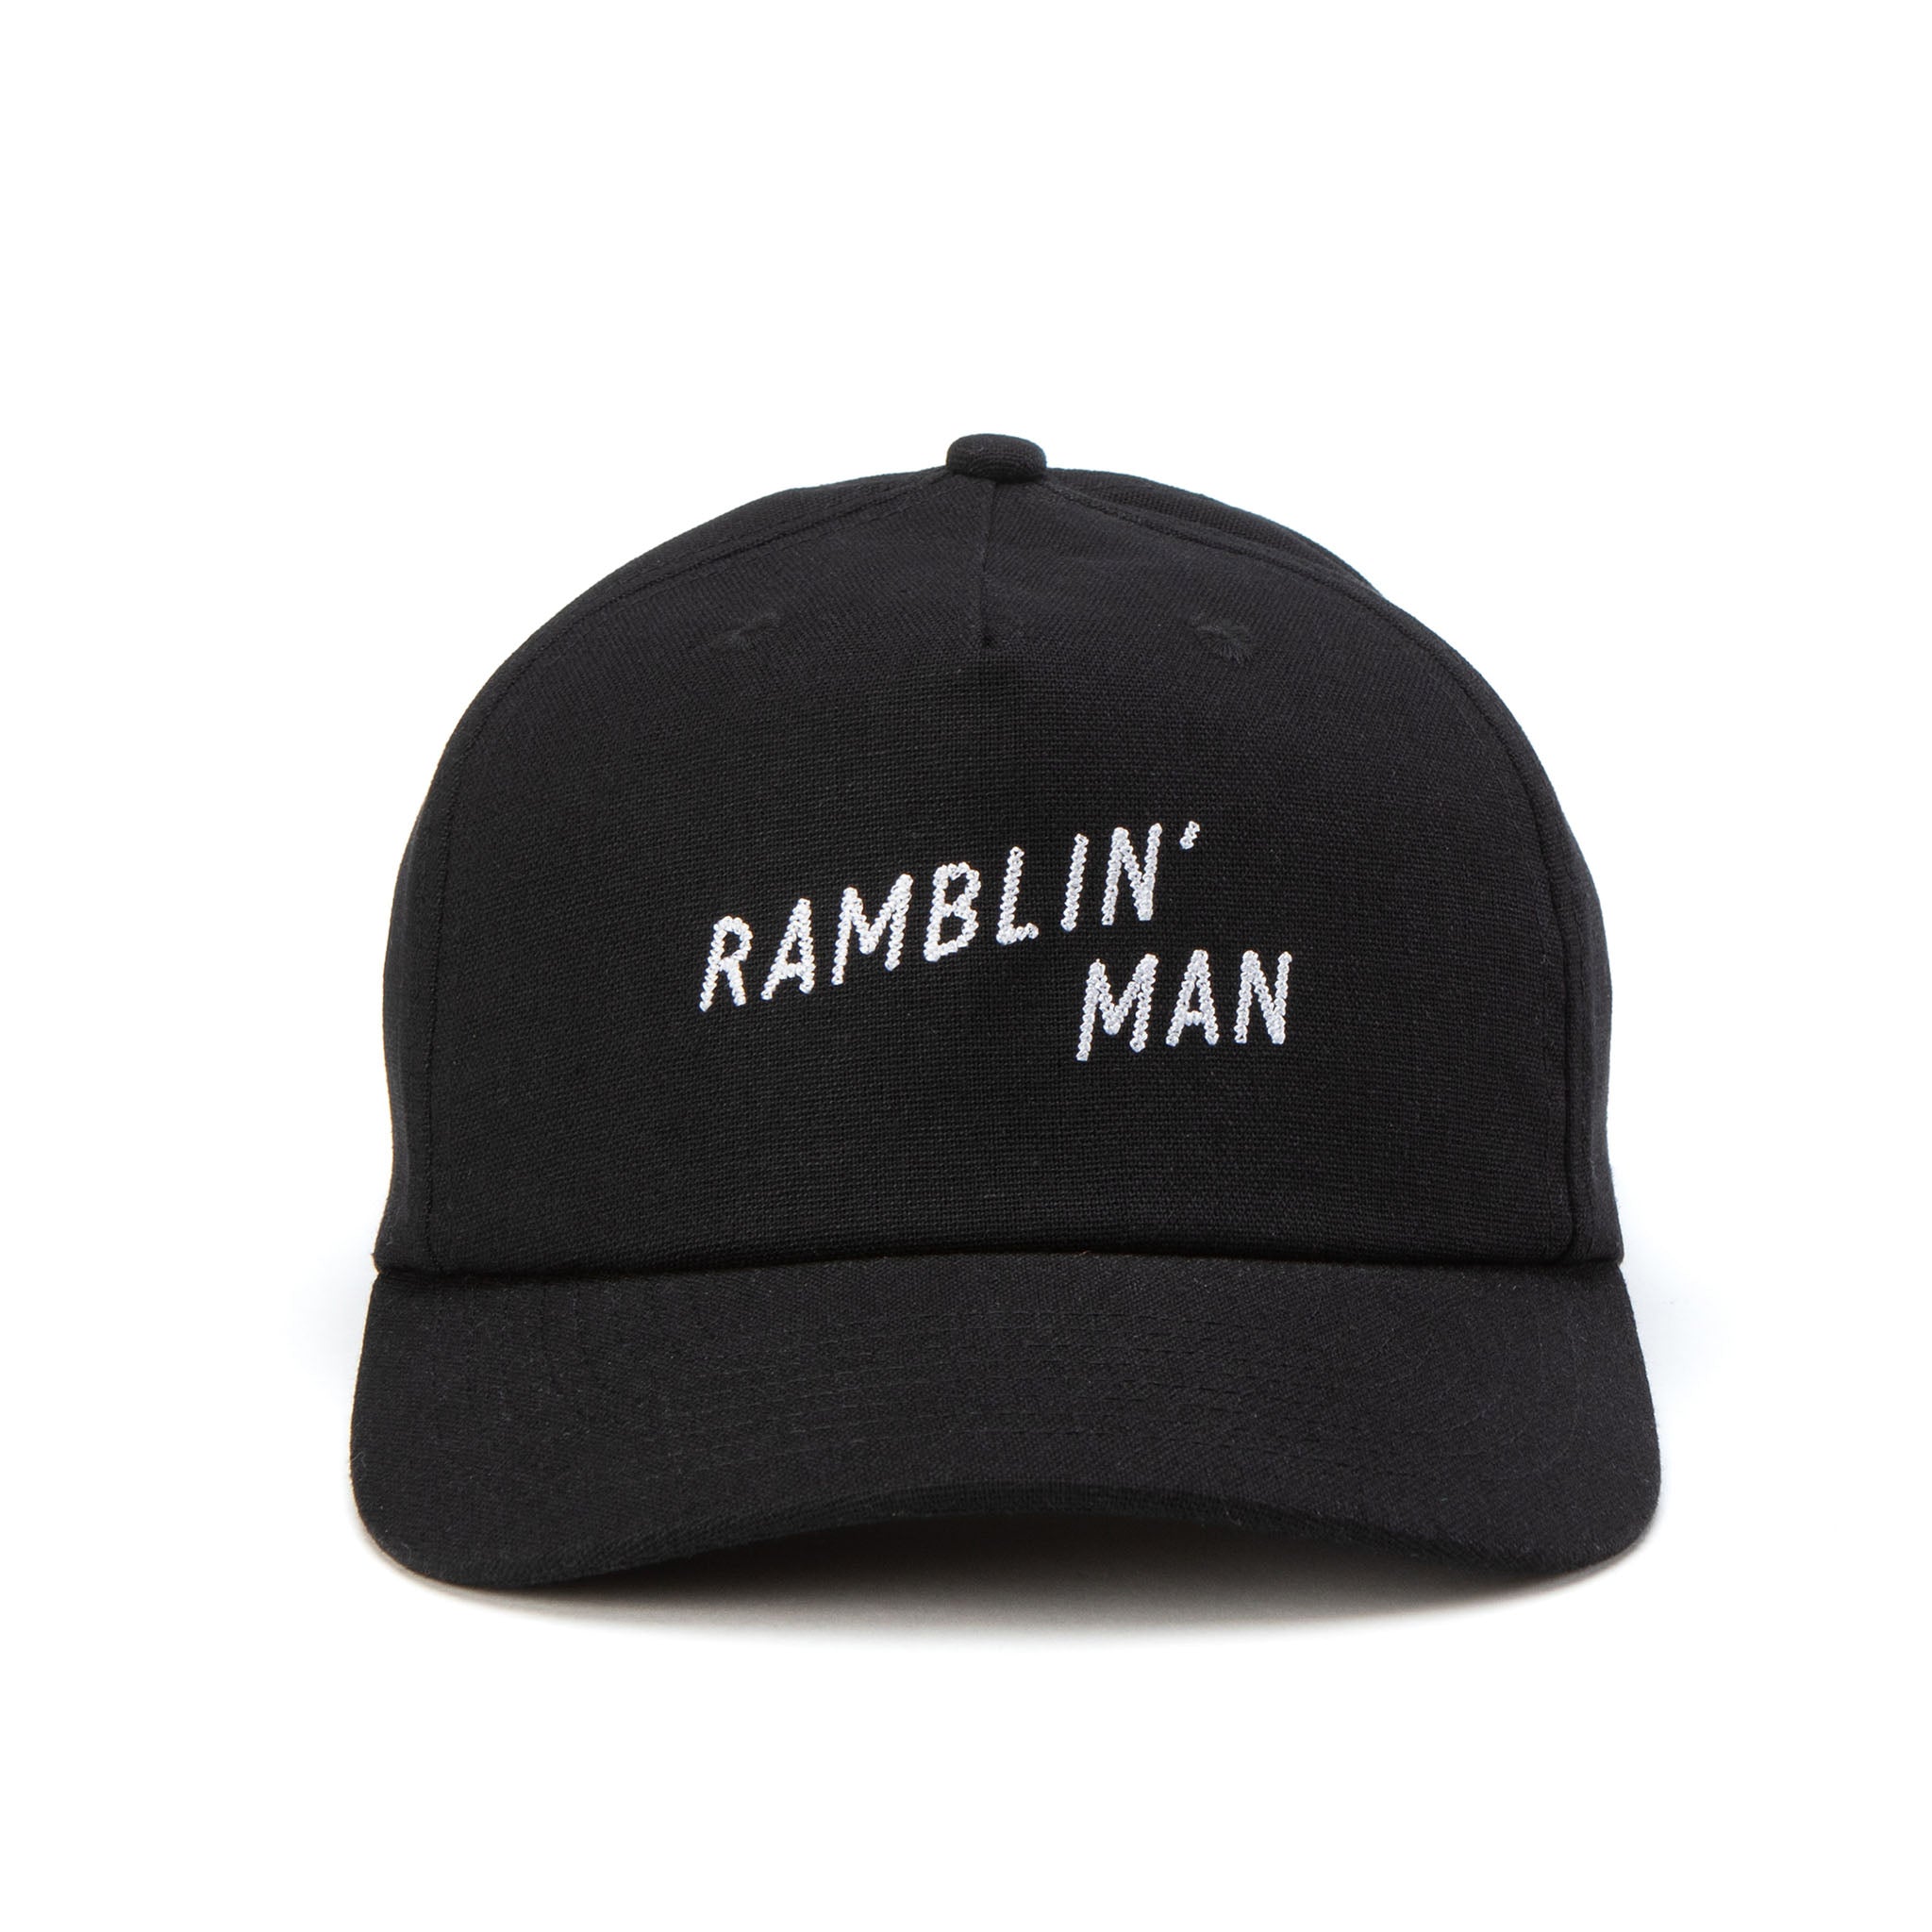 Ramblin' Man Hemp Snapback Black